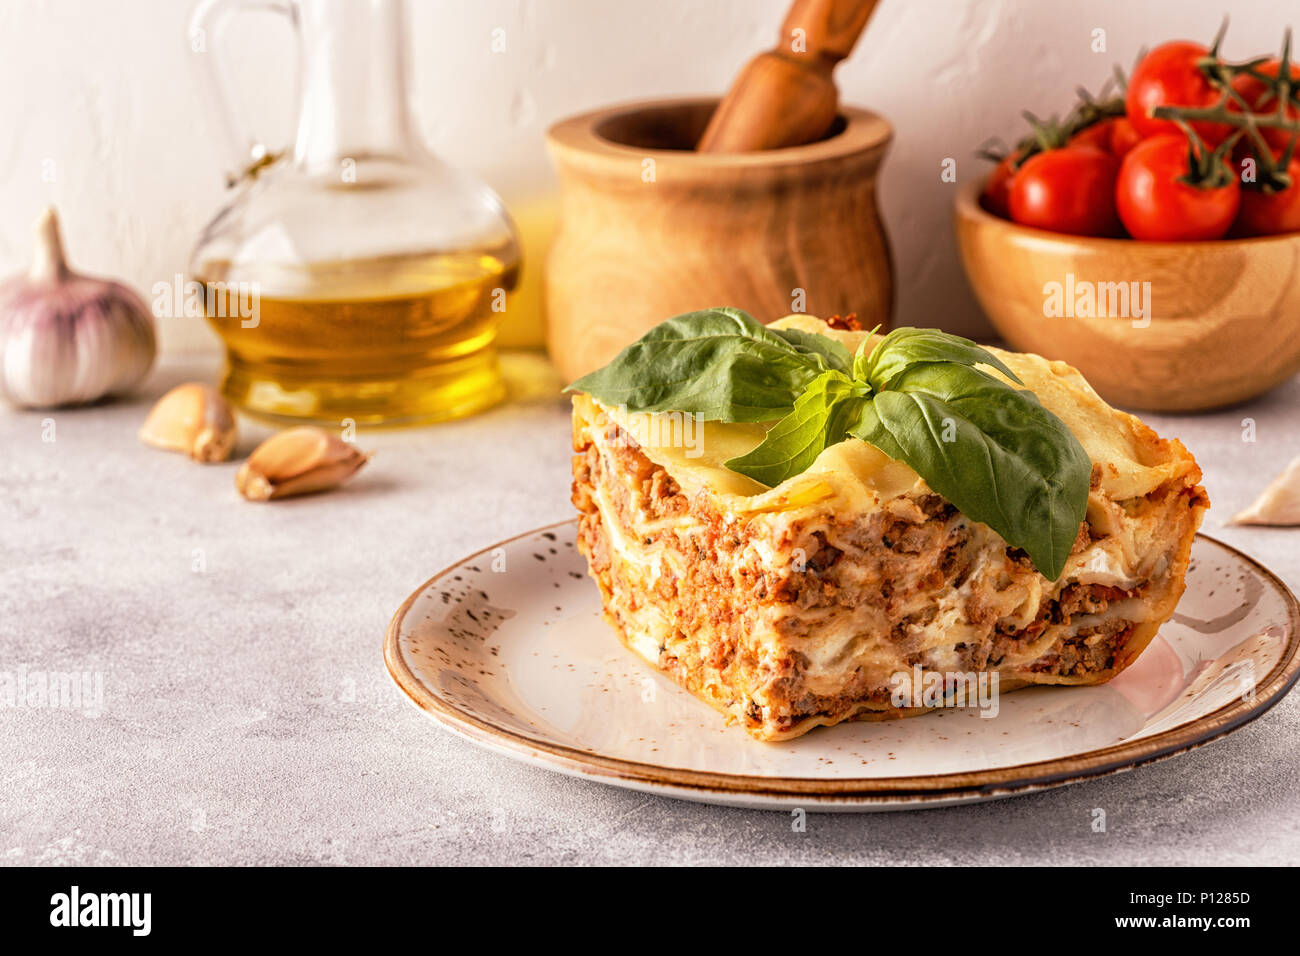 Lasagne tradizionali realizzati con le carni bovine macinate ragù alla bolognese e besciamella guarnita con foglie di basilico. Foto Stock